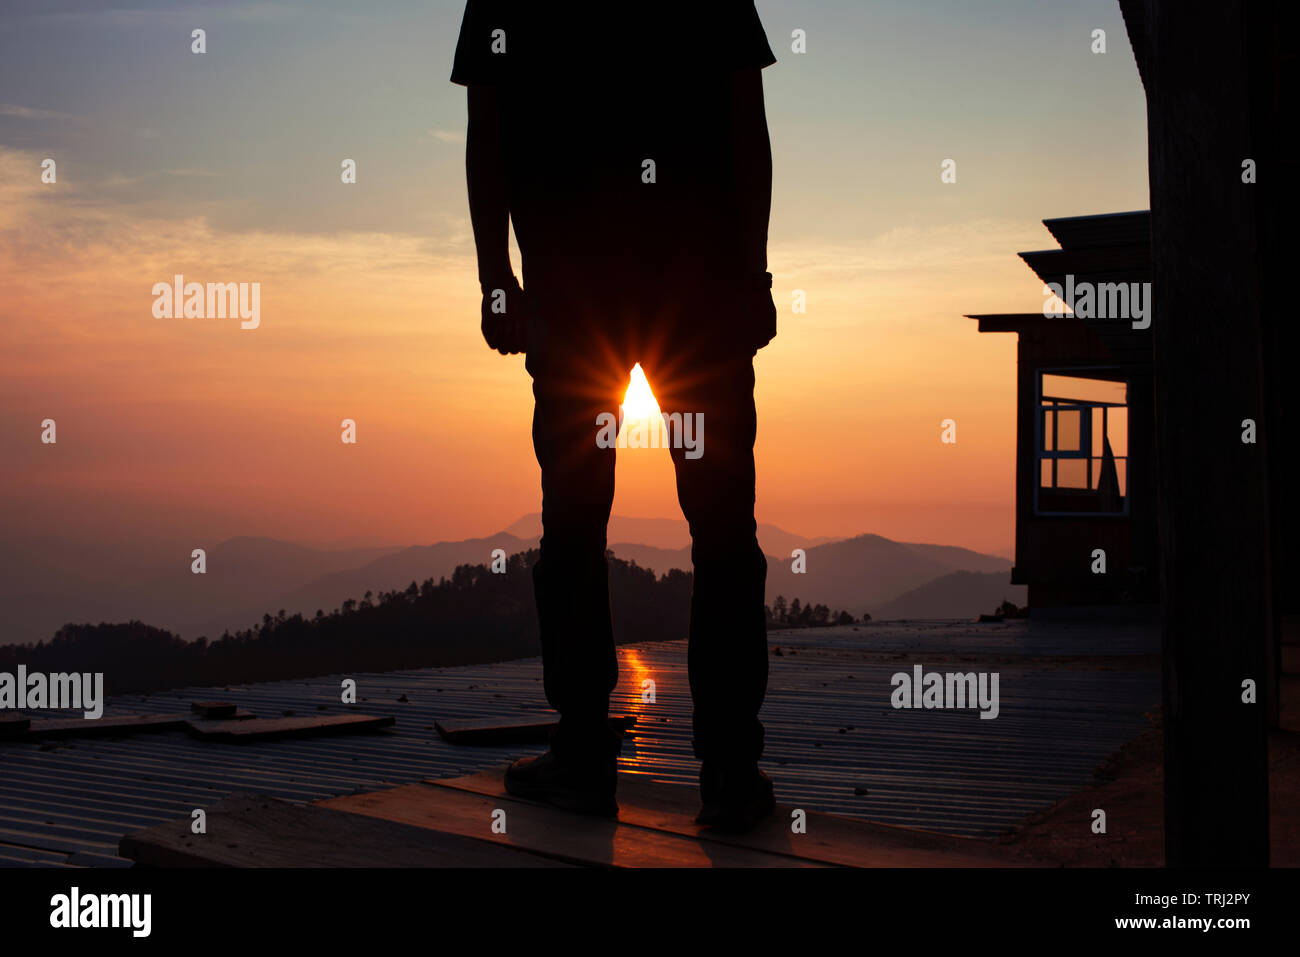 Silueta de un hombre de pie sobre el techo alto viendo la puesta de sol. San José del Pacifico, Oaxaca, México. Mayo de 2019 Foto de stock